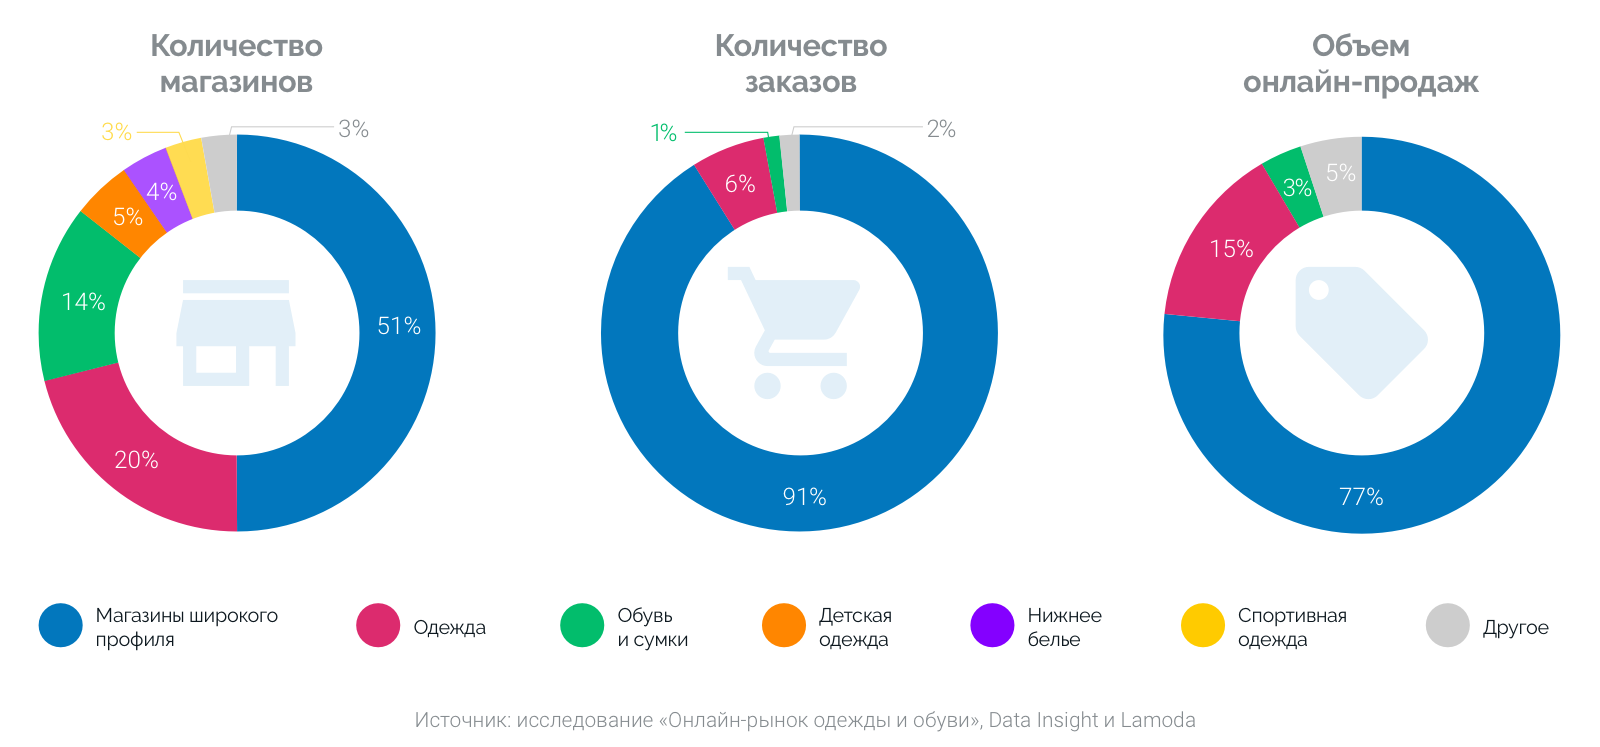 Аналитическая компания рынка. Продажа одежды на рынке. Объем рынка одежды. Российский рынок одежды. Анализ рынка интернет магазинов одежды.